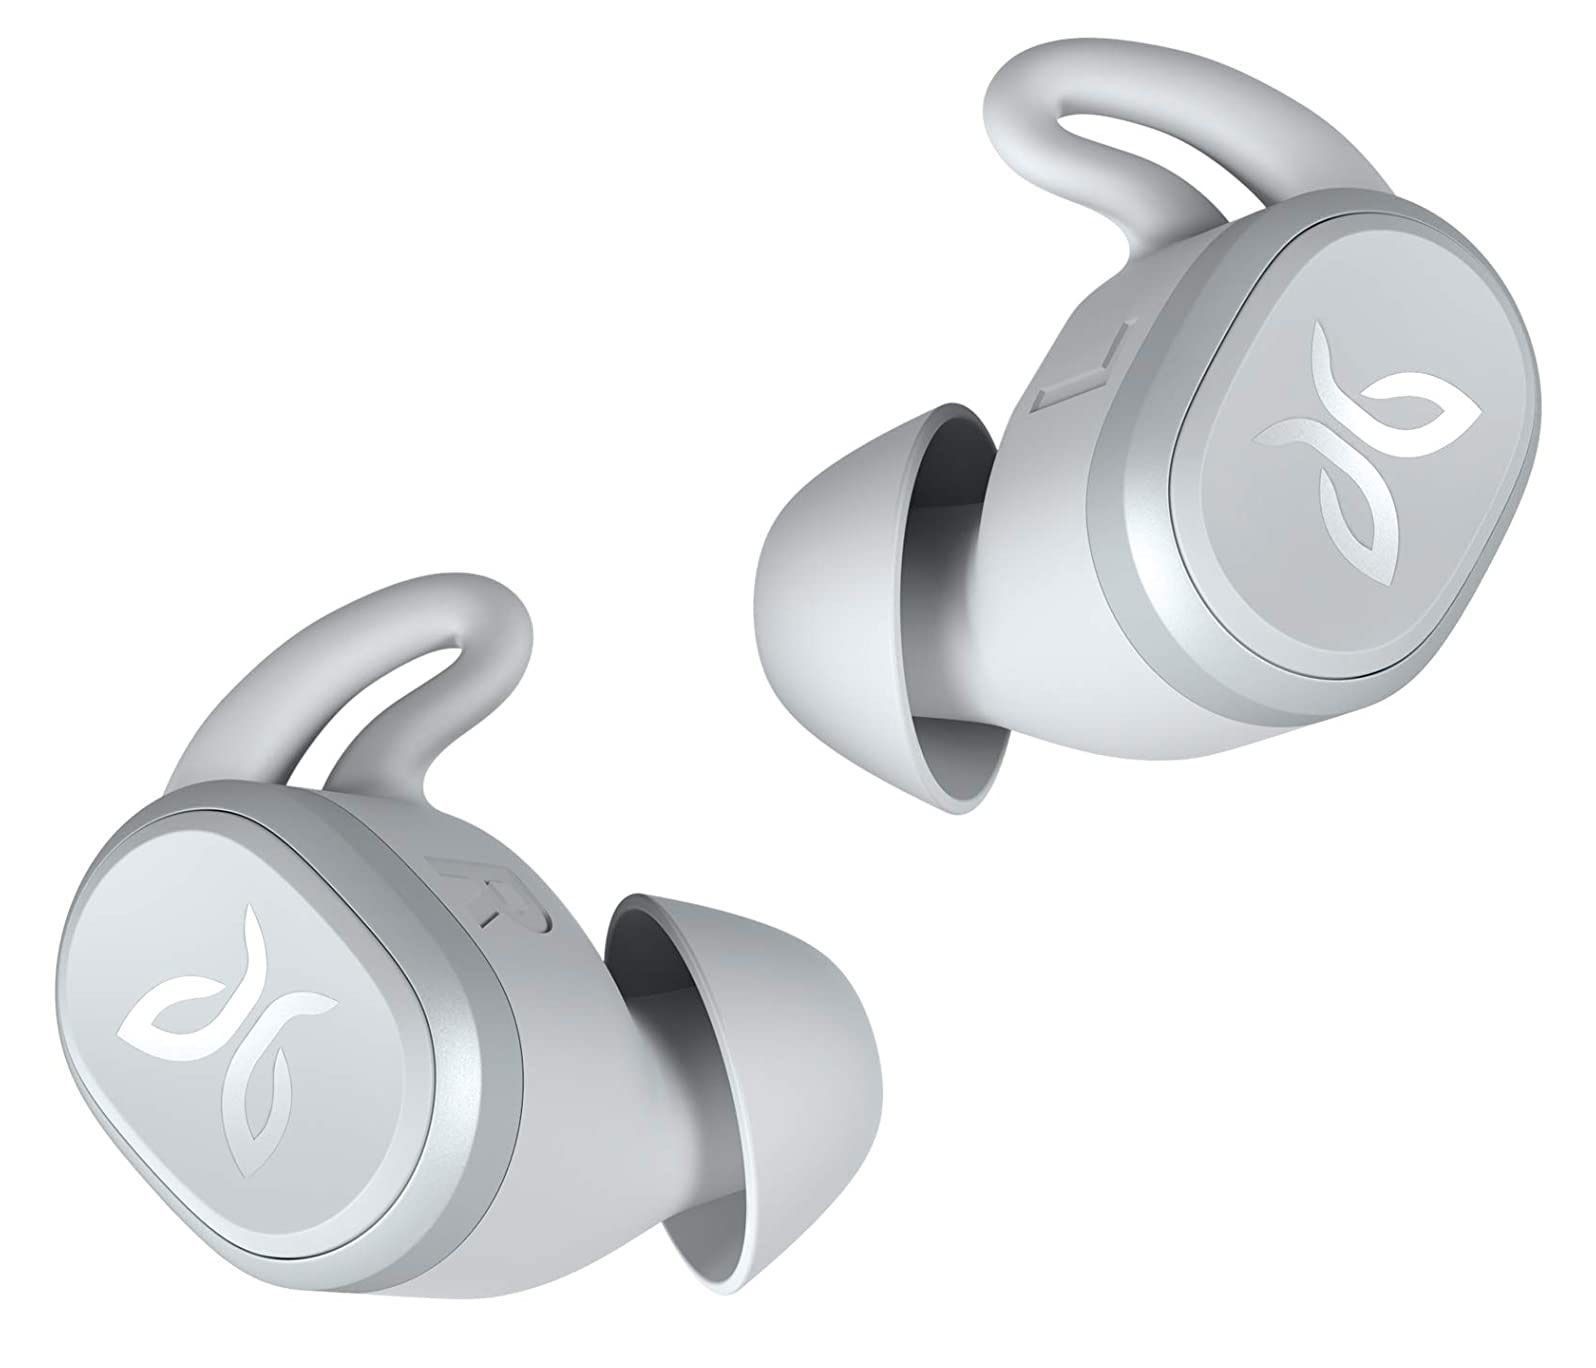 Լավագույն նվերներ, նվերների գաղափարներ կանանց համար - Jaybird Vista True անլար Bluetooth և անջրանցիկ ականջակալներ